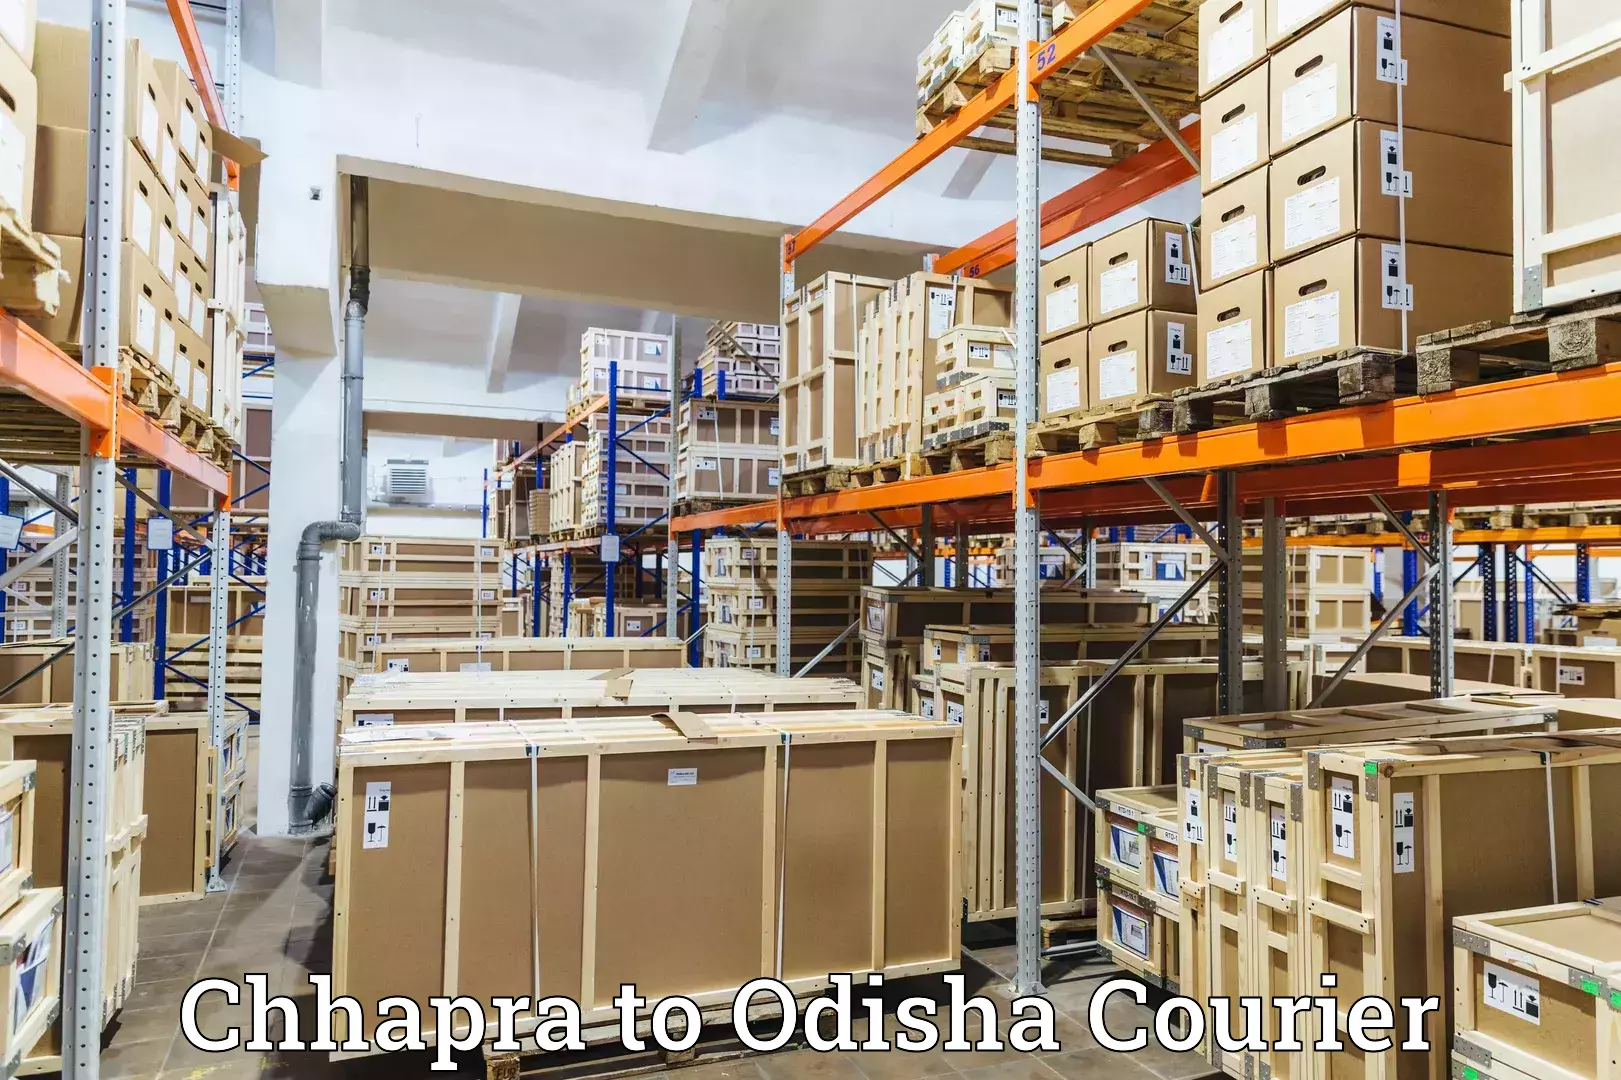 Global shipping networks in Chhapra to Odisha